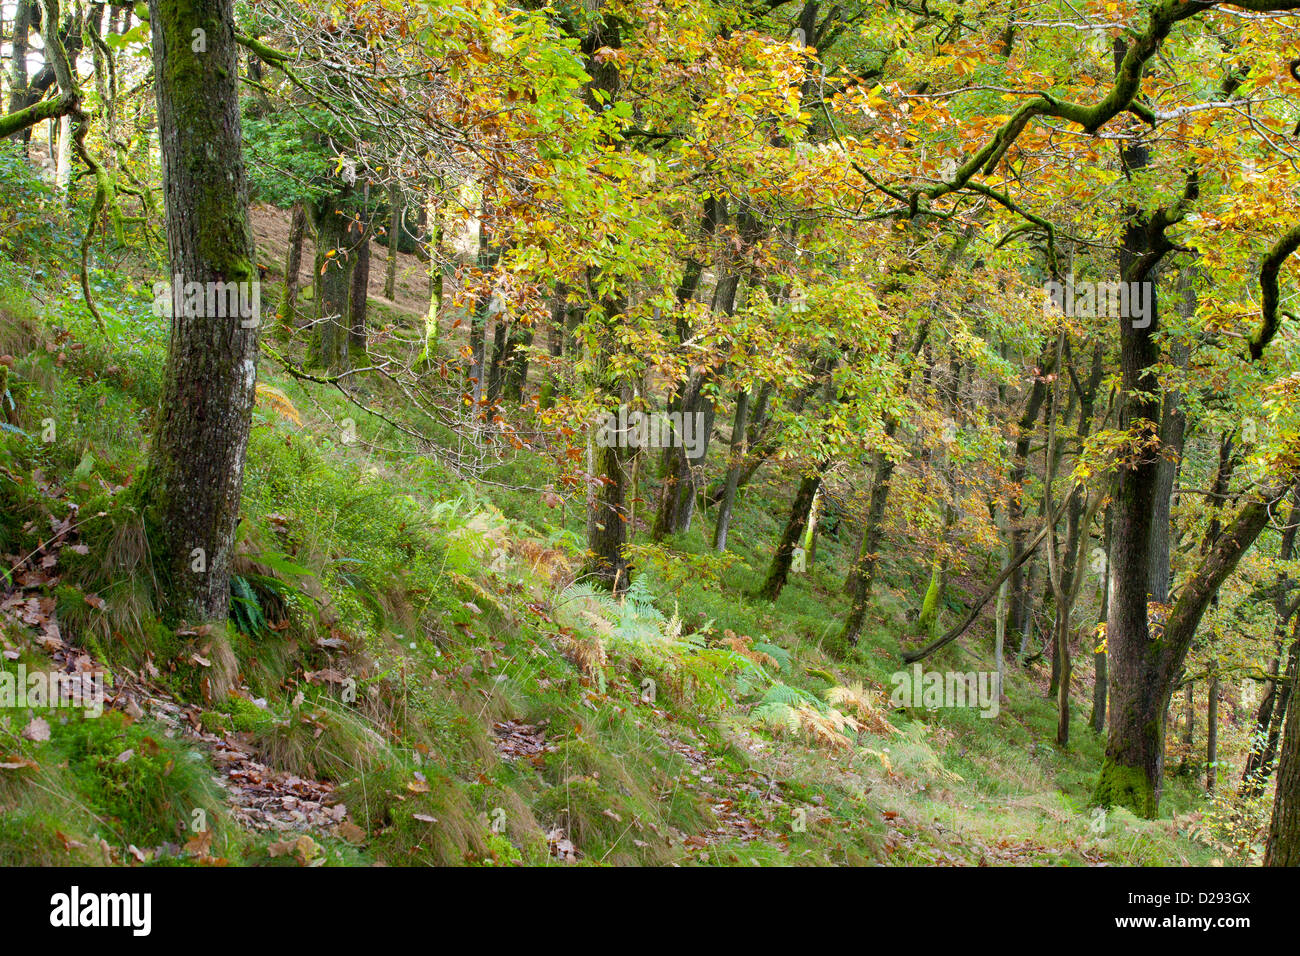 Chêne sessile (Quercus petraea) en automne. Powys, Pays de Galles. Octobre. Banque D'Images